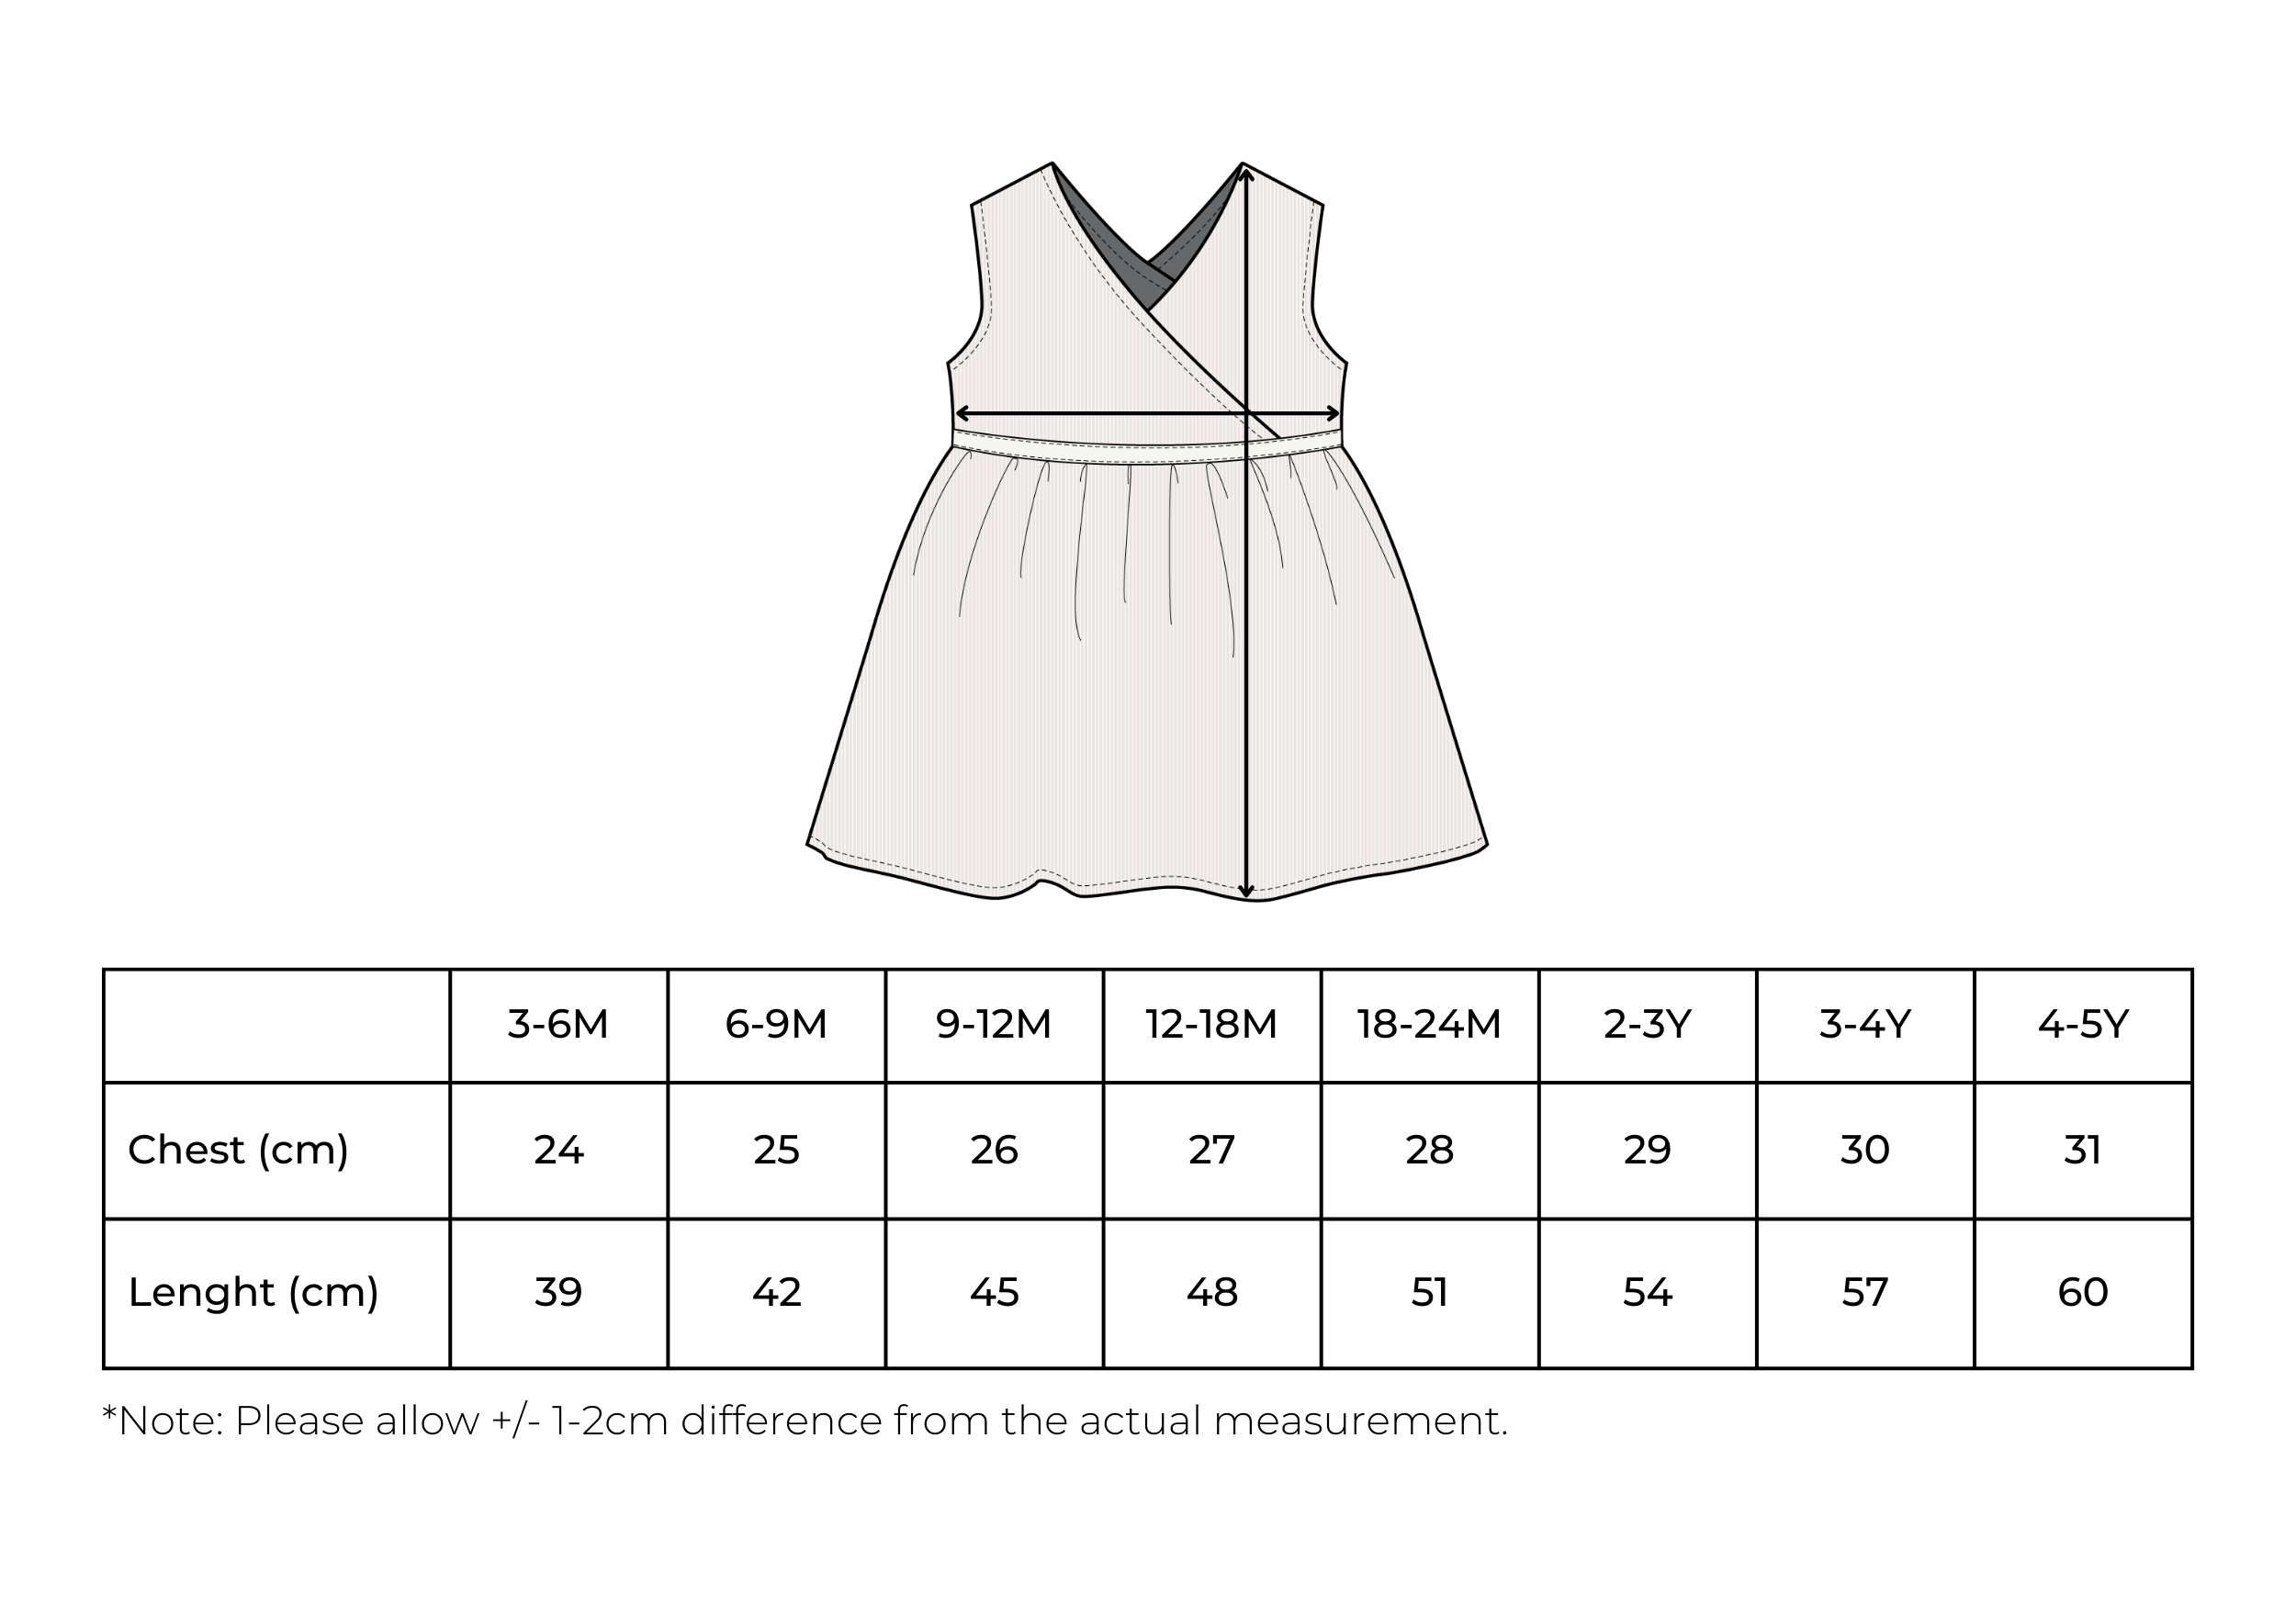 NINON dress - summer dress for babies